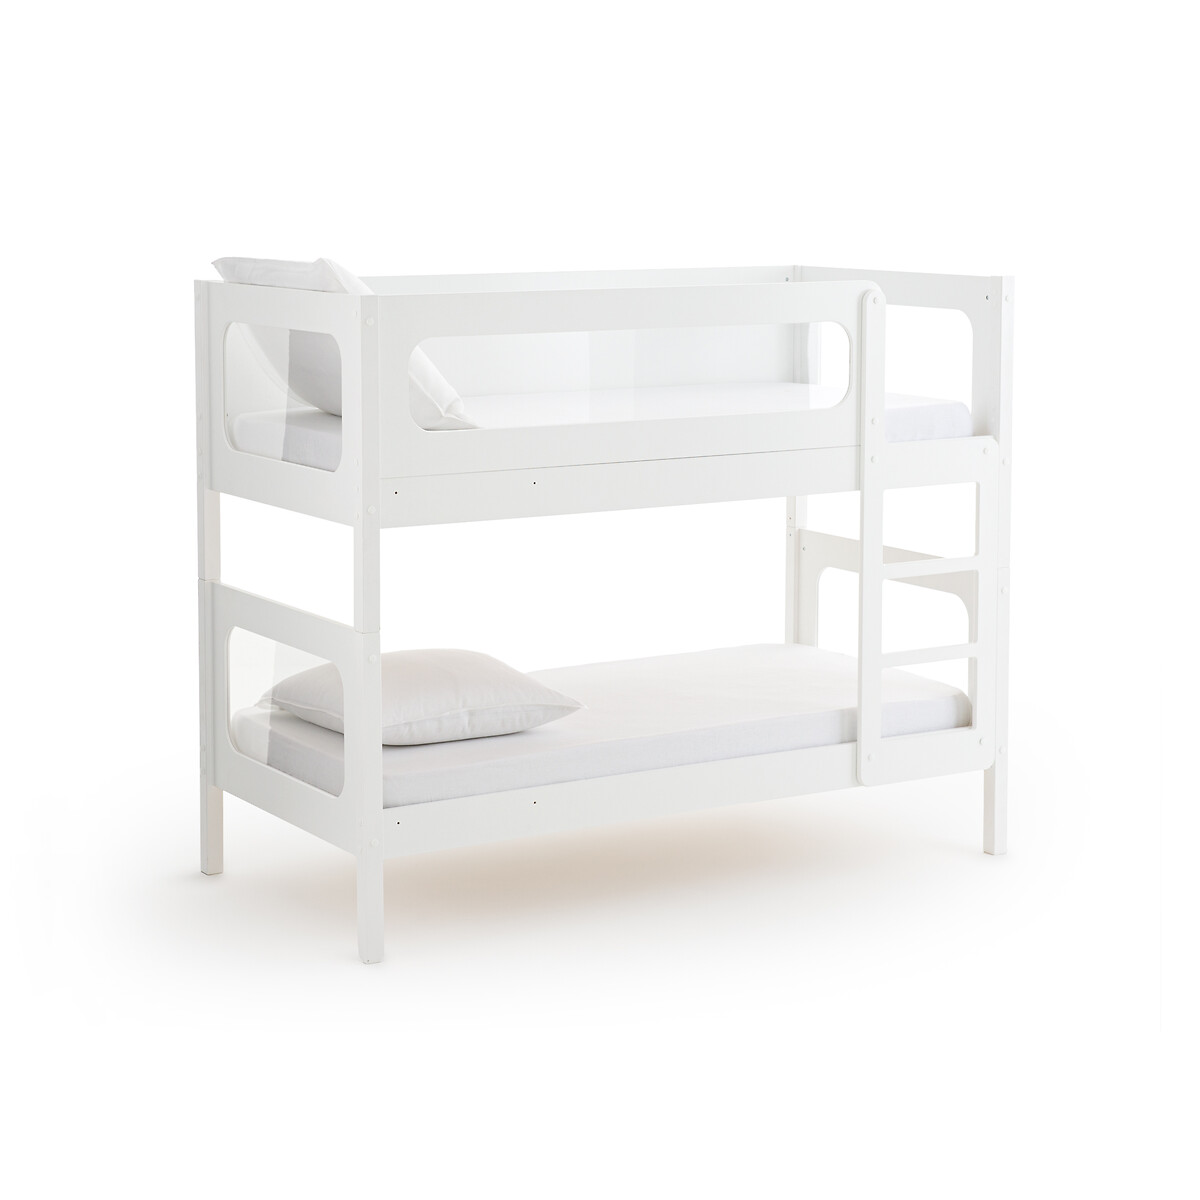 Кровать Двухъярусная с кроватным основанием Pilha 90 x 190 см белый LaRedoute, размер 90 x 190 см - фото 1